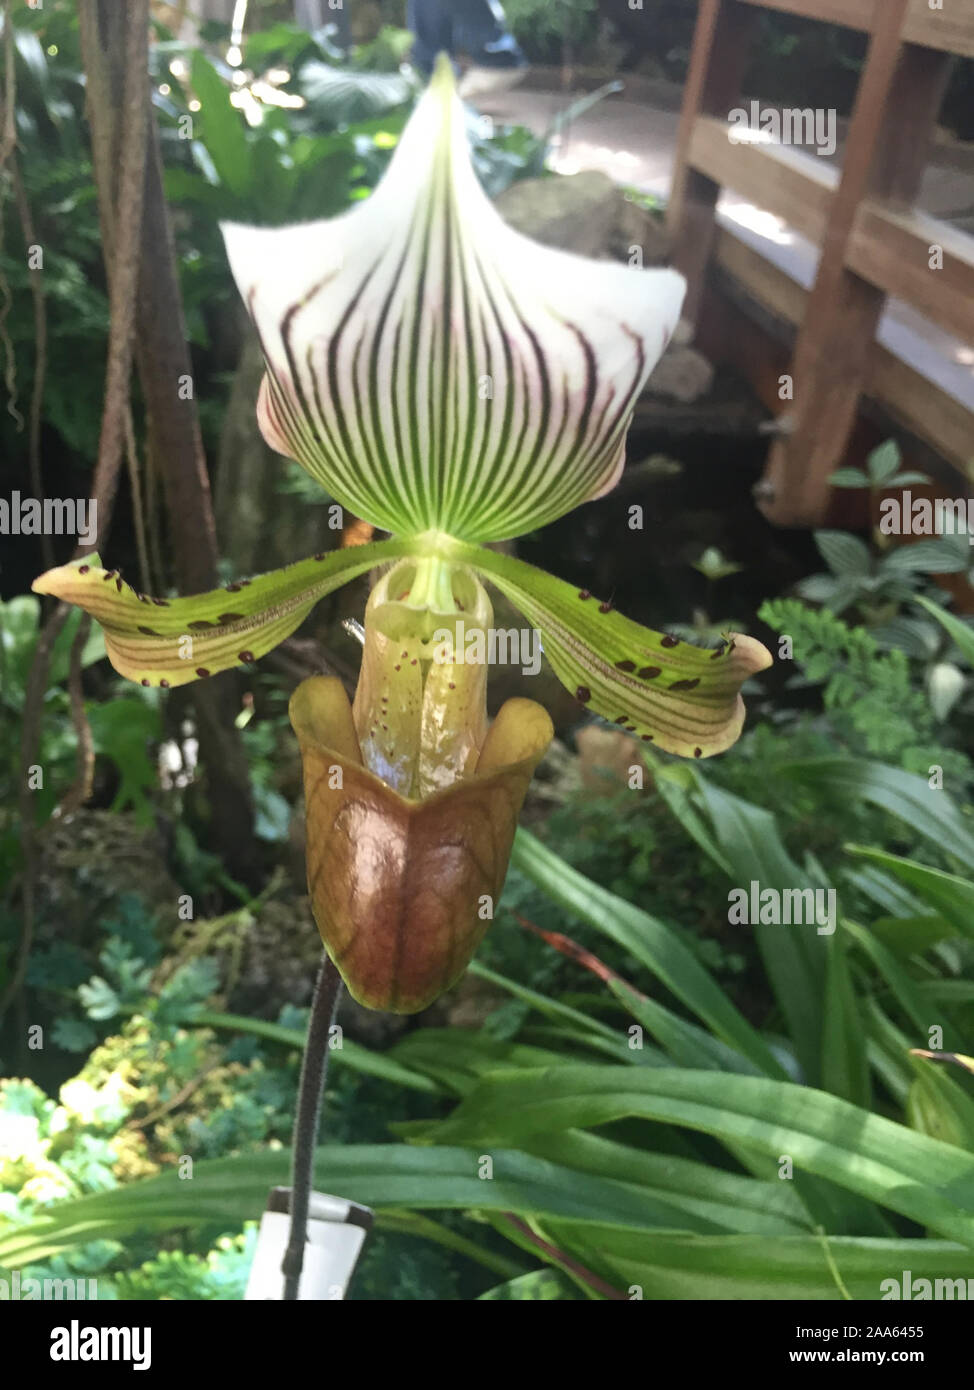 Paphiopedilum barbatum var. nigritum 'Pygmy' Live Orchid Stock Photo